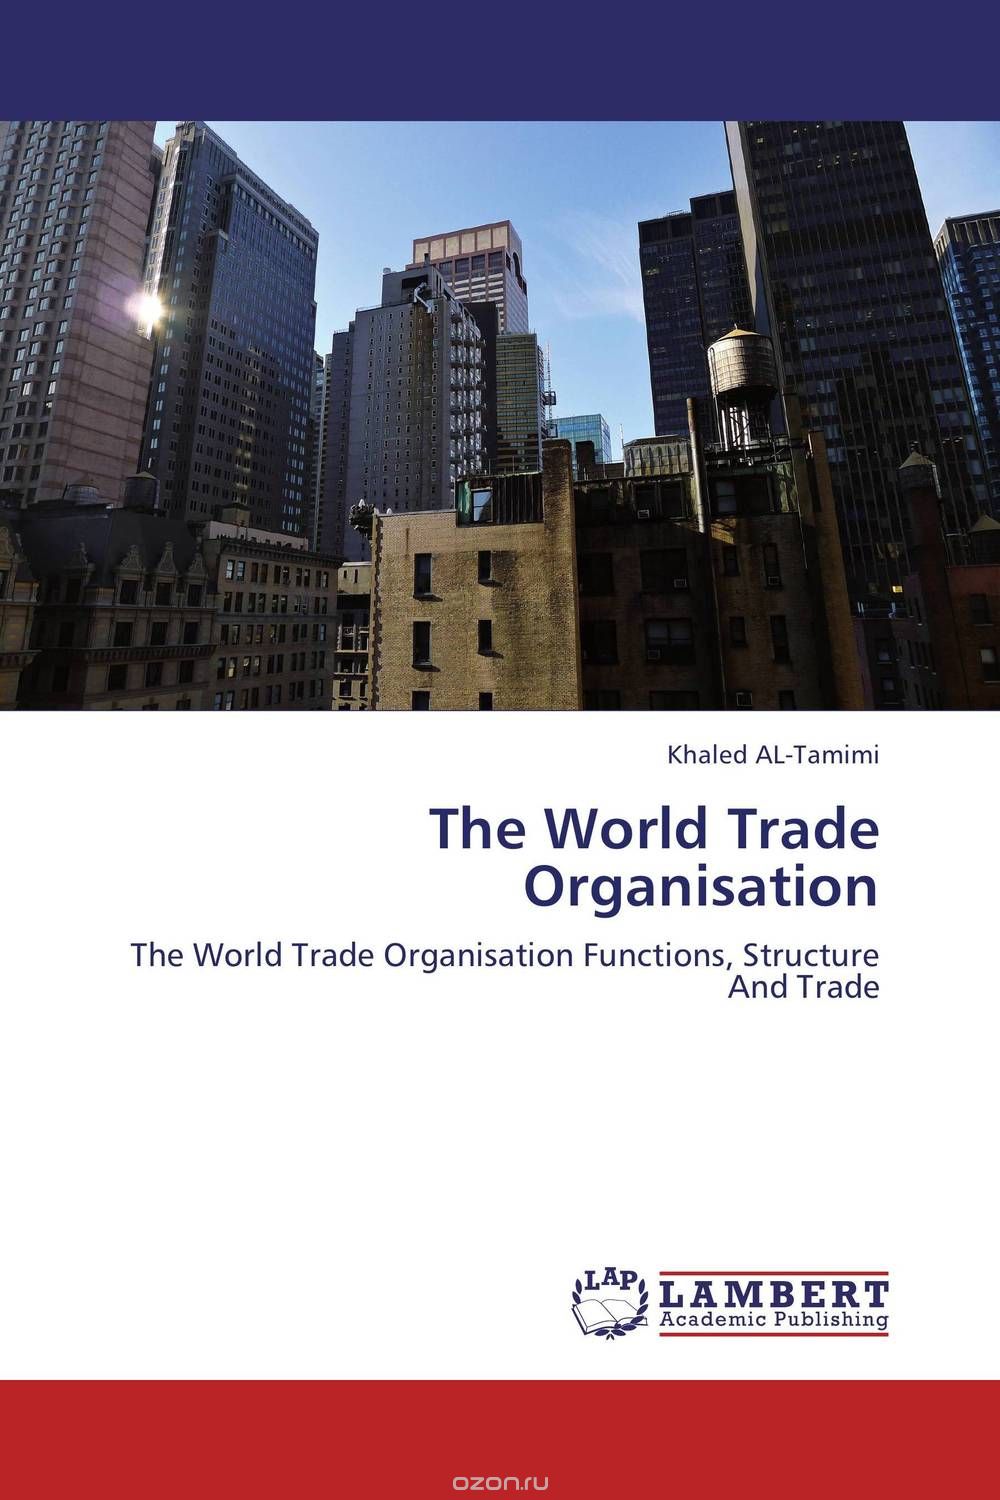 Скачать книгу "The World Trade Organisation"